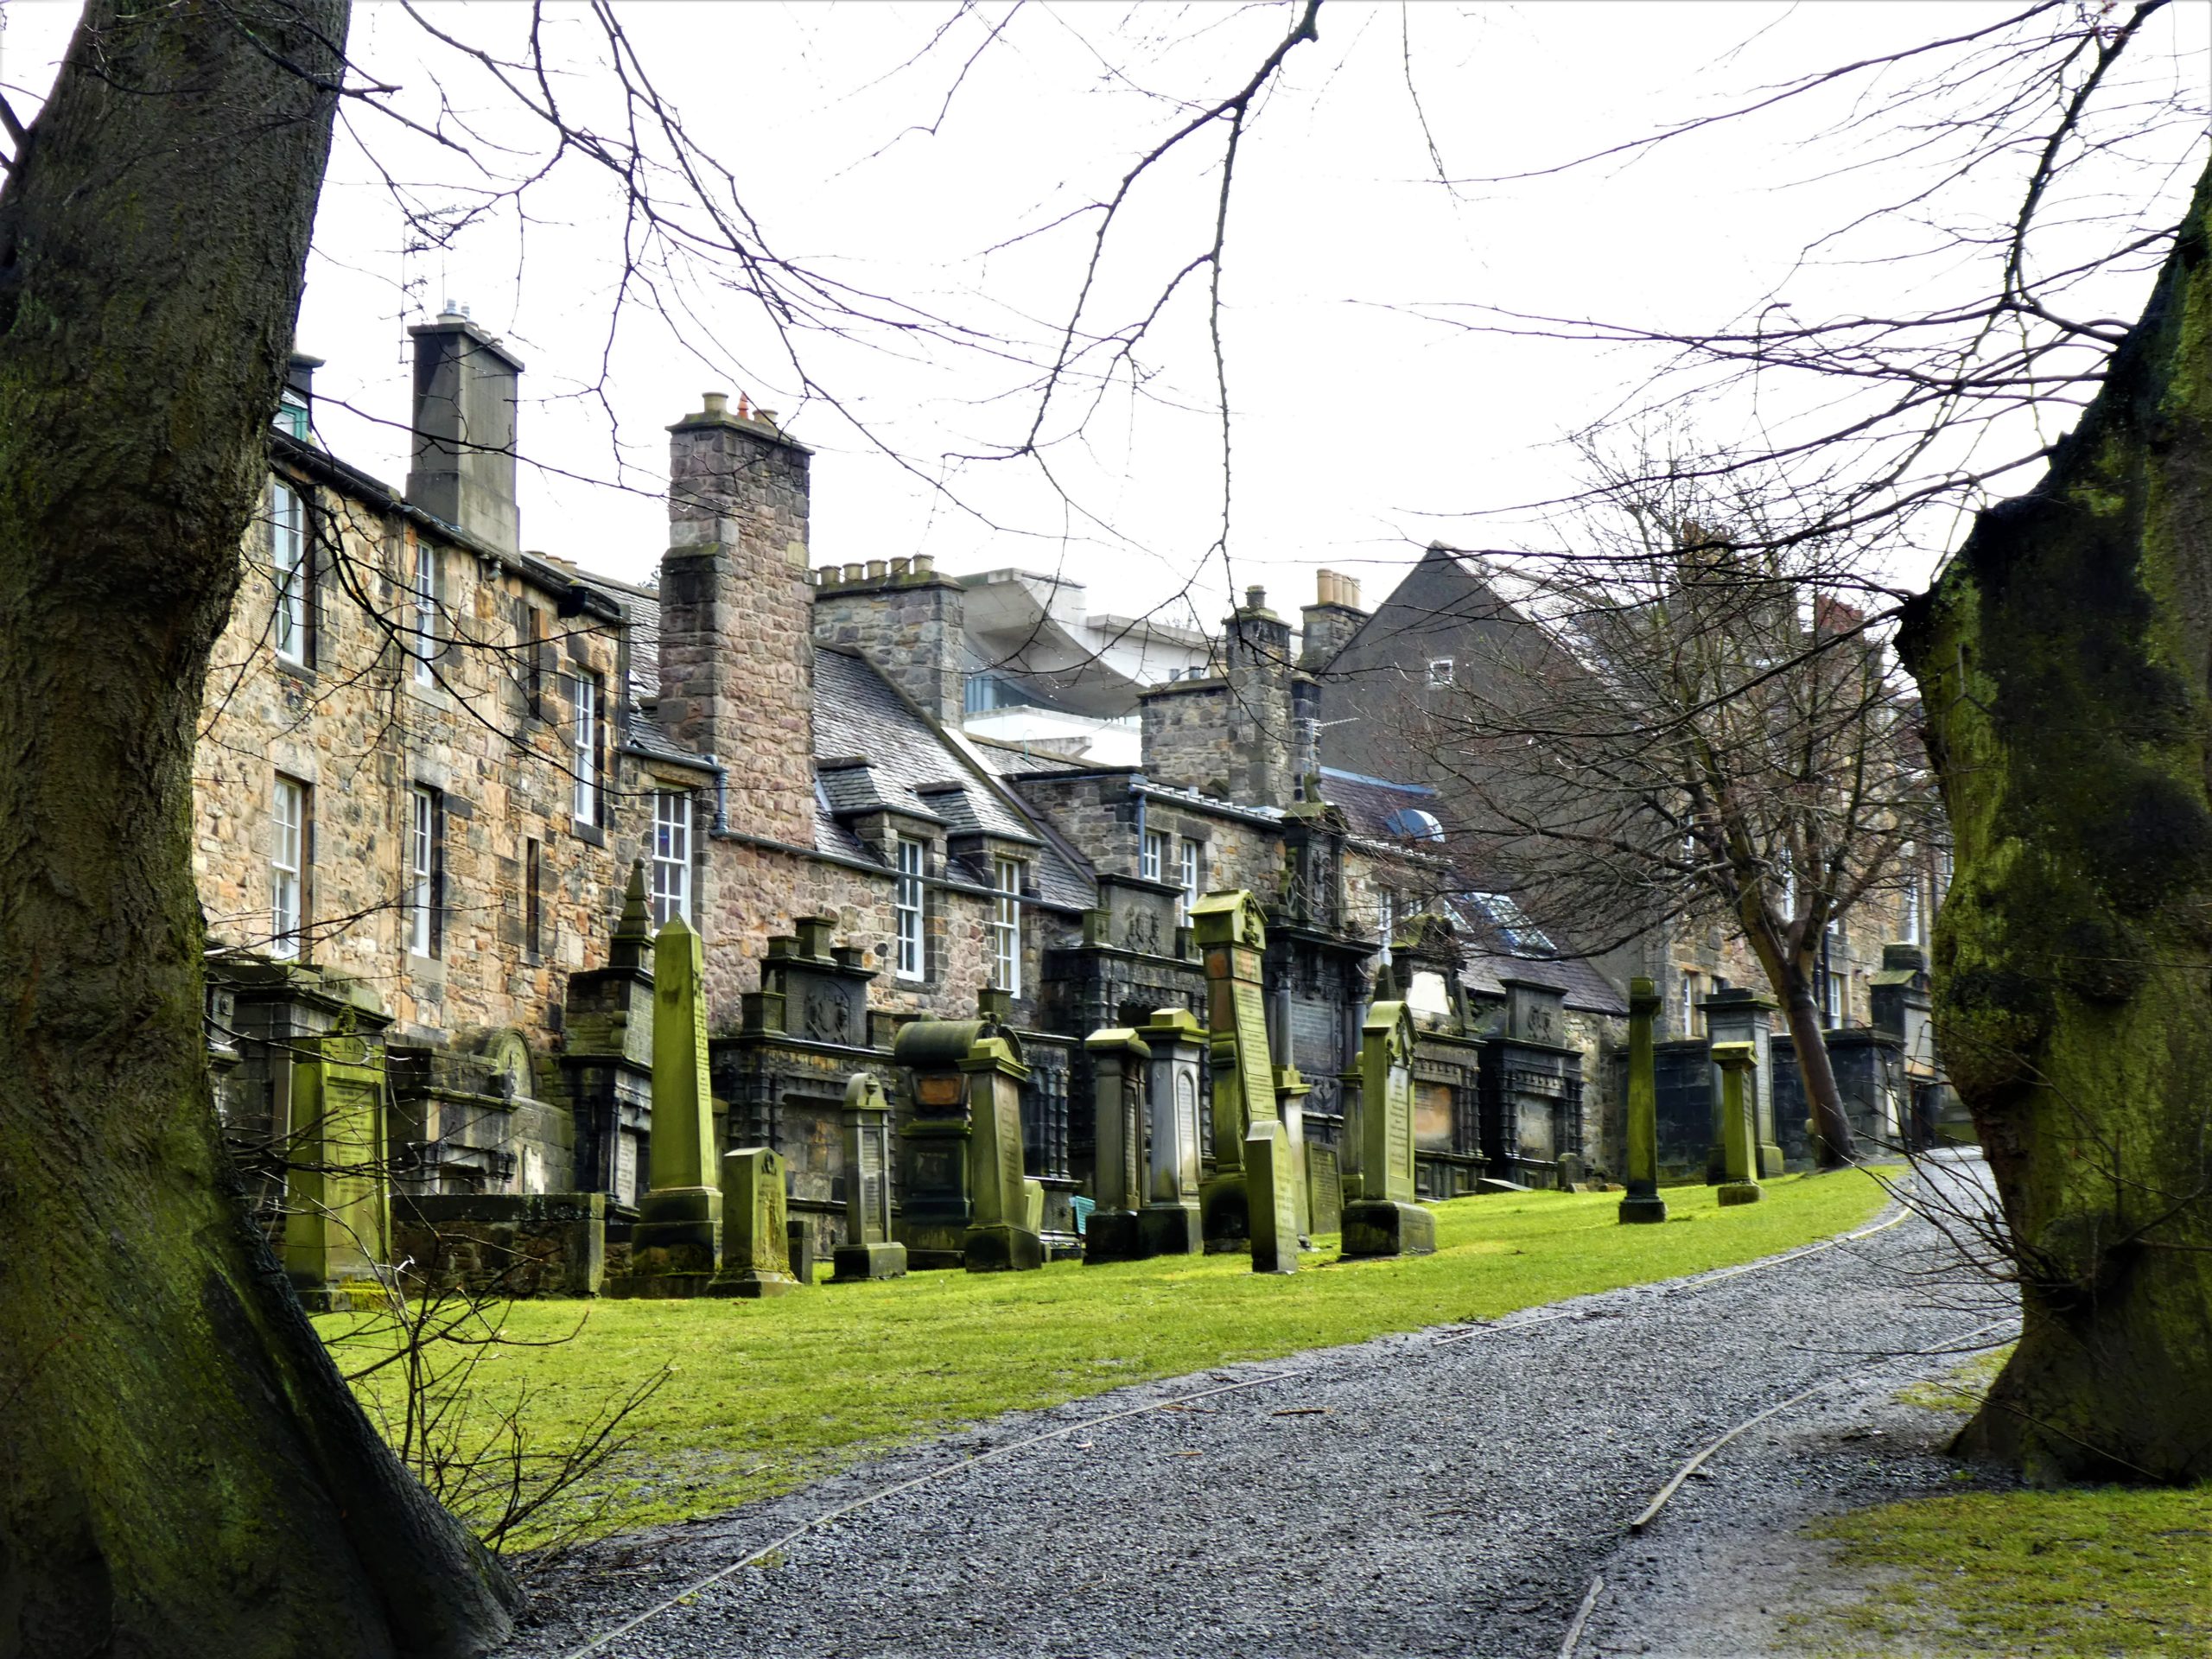 Cemetery in Edinburgh